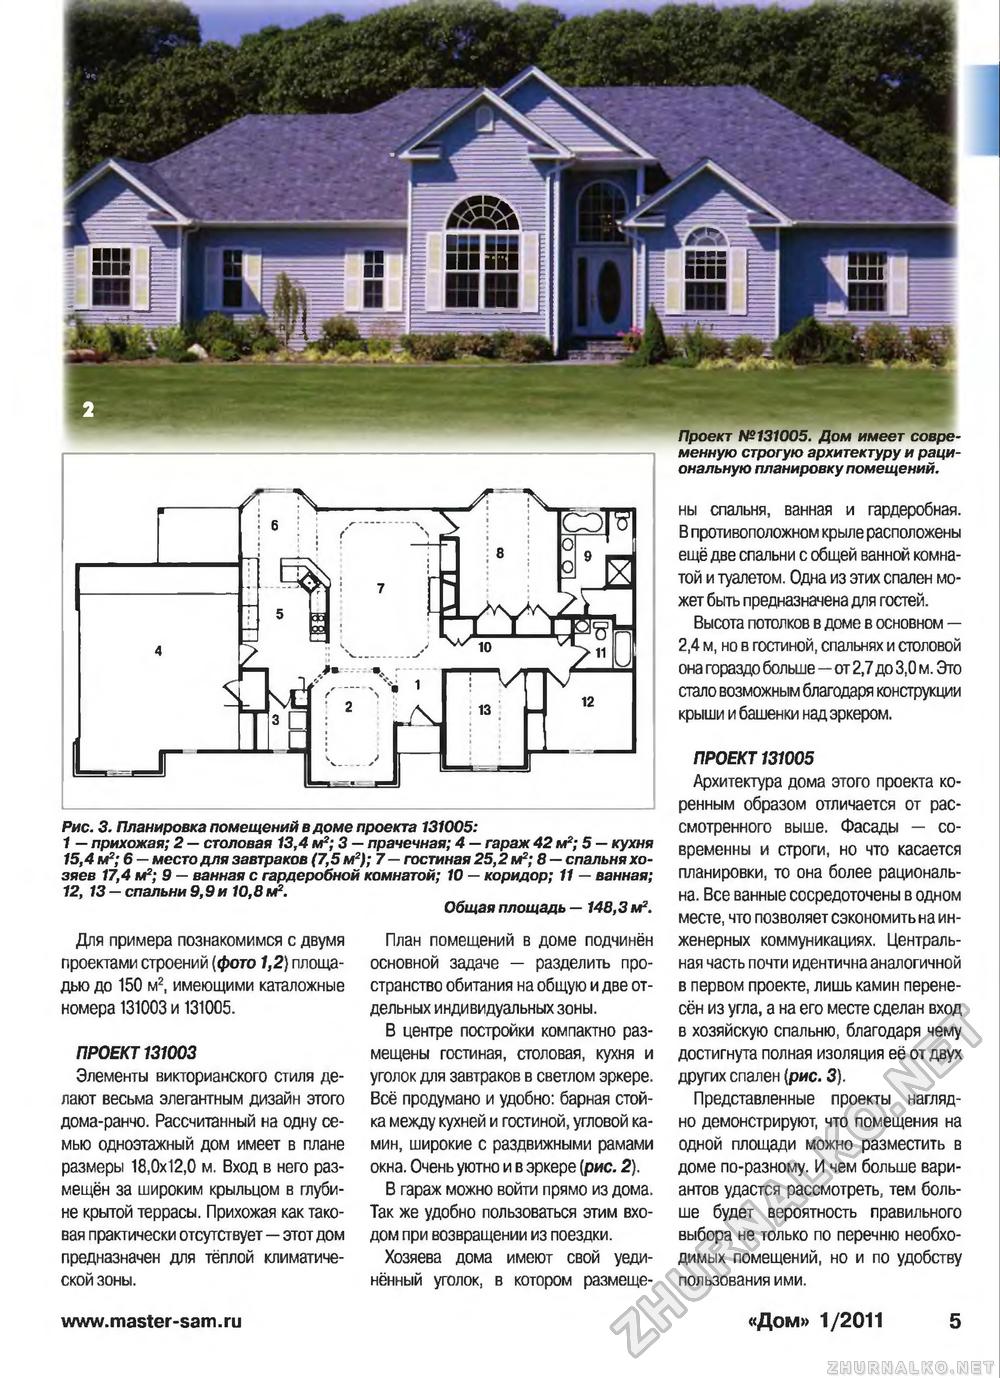 Дом 2011-01, страница 5